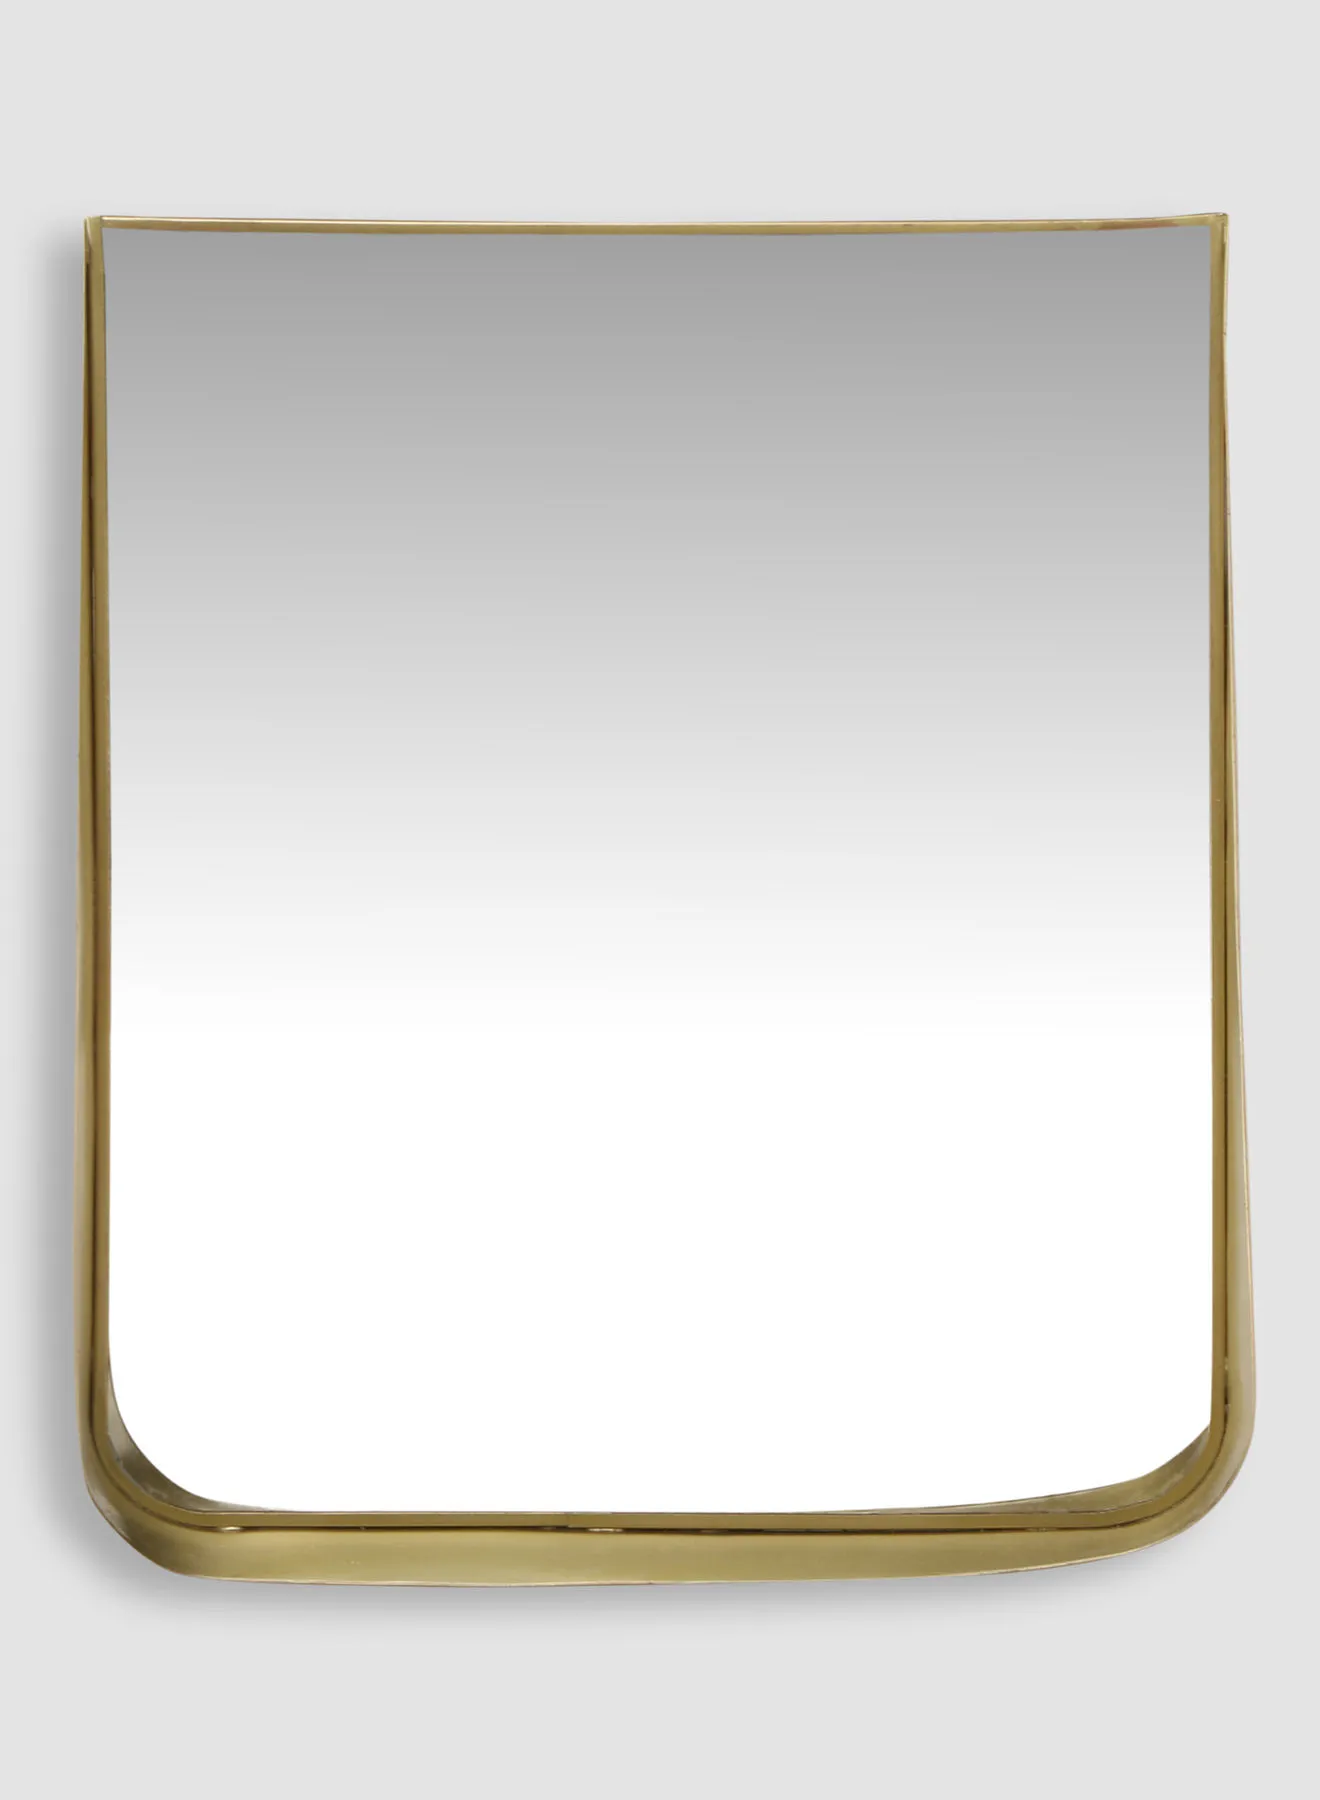 مرآة مد وجزر مع تخزين / أرفف مواد ذات جودة فاخرة فريدة لمنزل أنيق ومثالي CCM12736 ذهبي L30 x H34.5cm